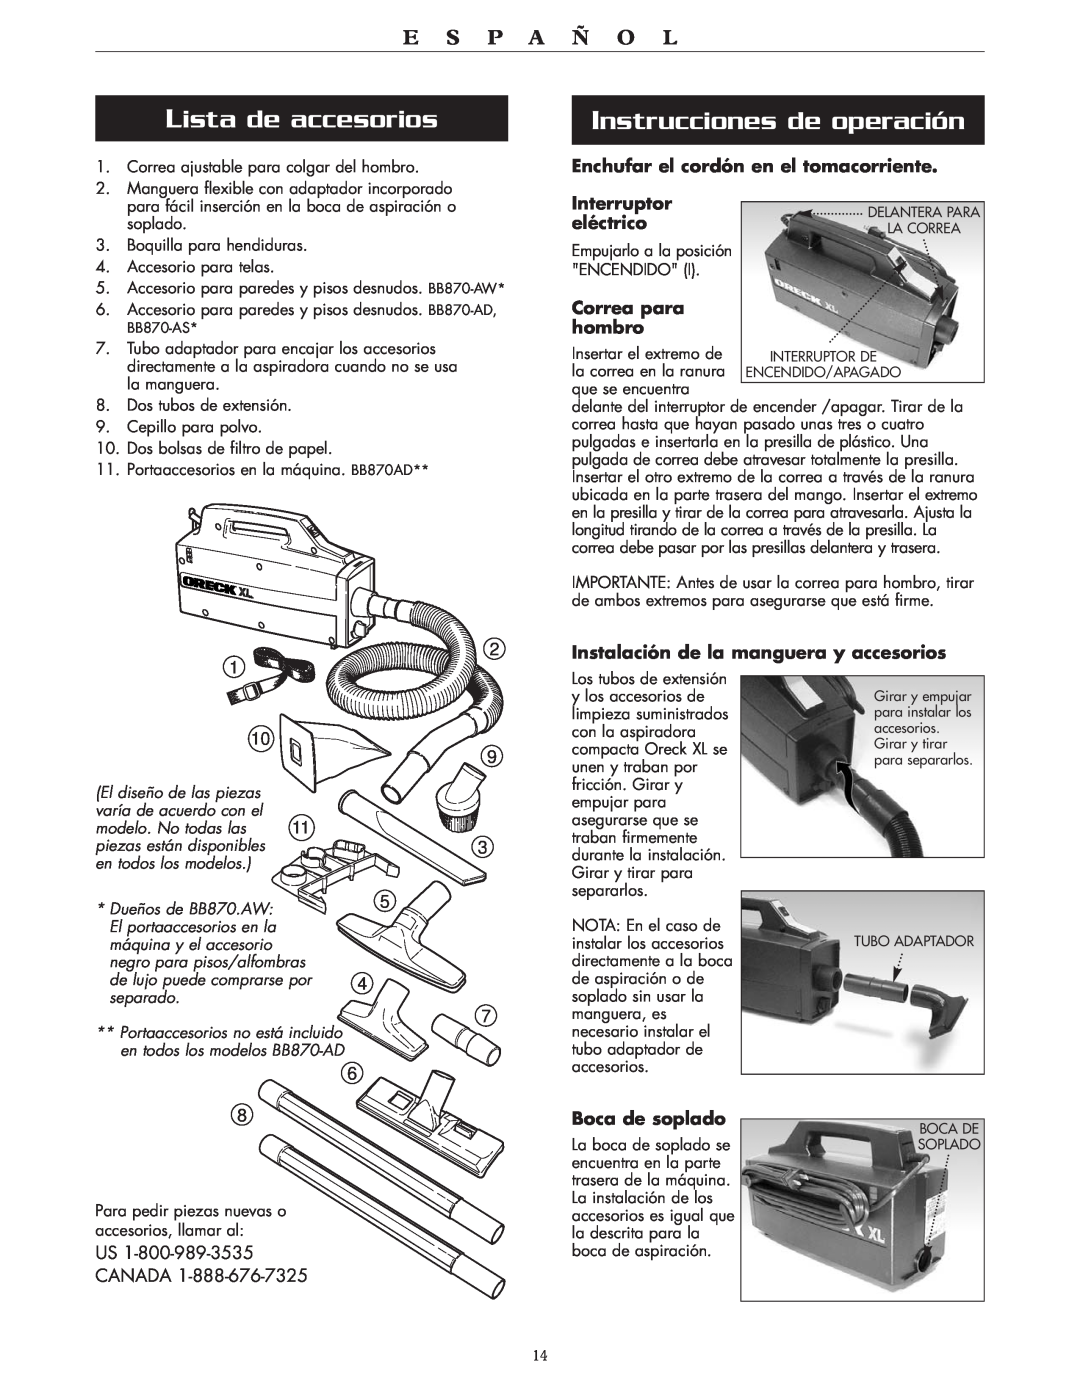 Oreck BB870-AW Lista de accesorios, Instrucciones de operación, E S P A Ñ O L, Enchufar el cordón en el tomacorriente 